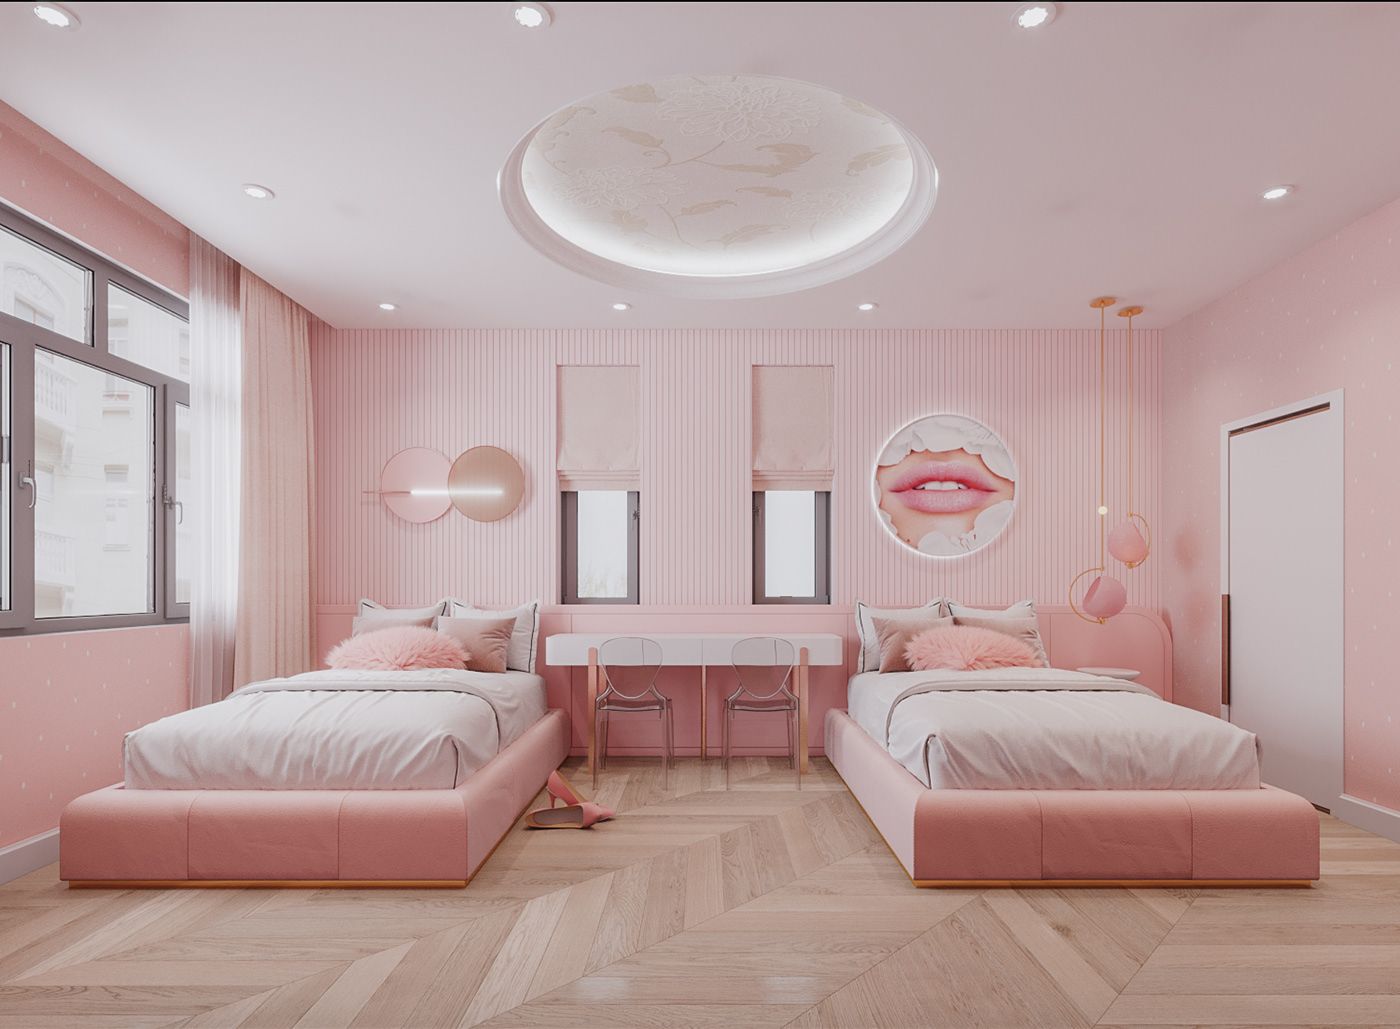 Trang trí phòng ngủ bằng giấy dán tường màu hồng phù hợp với lưa tuổi của người sử dụng